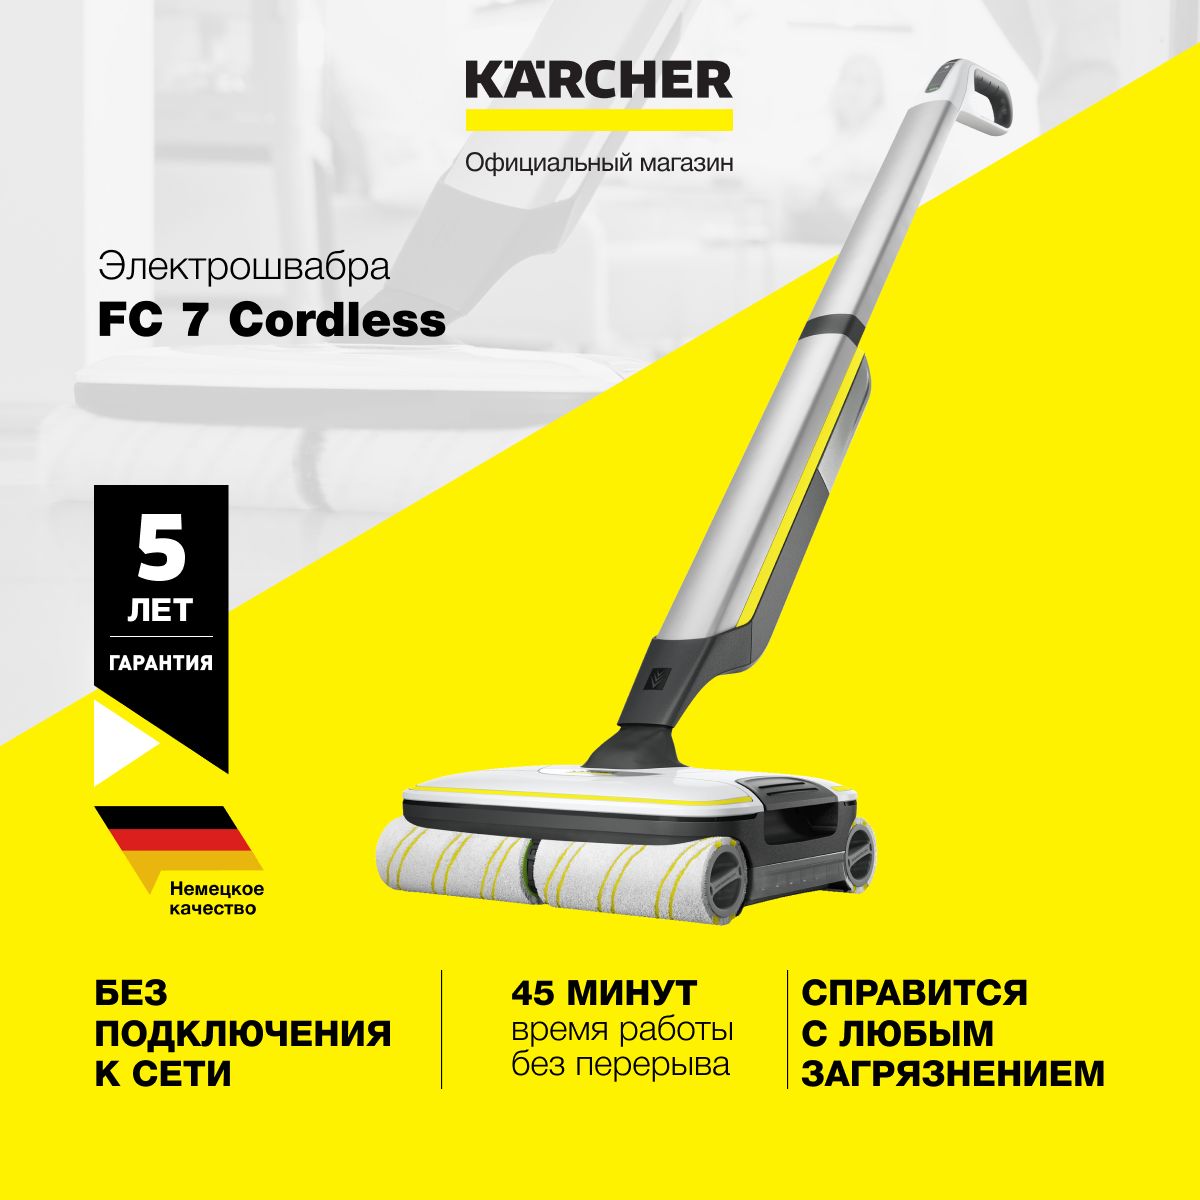 Fc 7 cordless купить. Karcher FC 7 Cordless Premium. Беспроводная электрошвабра Karcher fc7 Cordless Premium. Электрошвабра Karcher FC 7 Cordless. Швабра Karcher fc7.